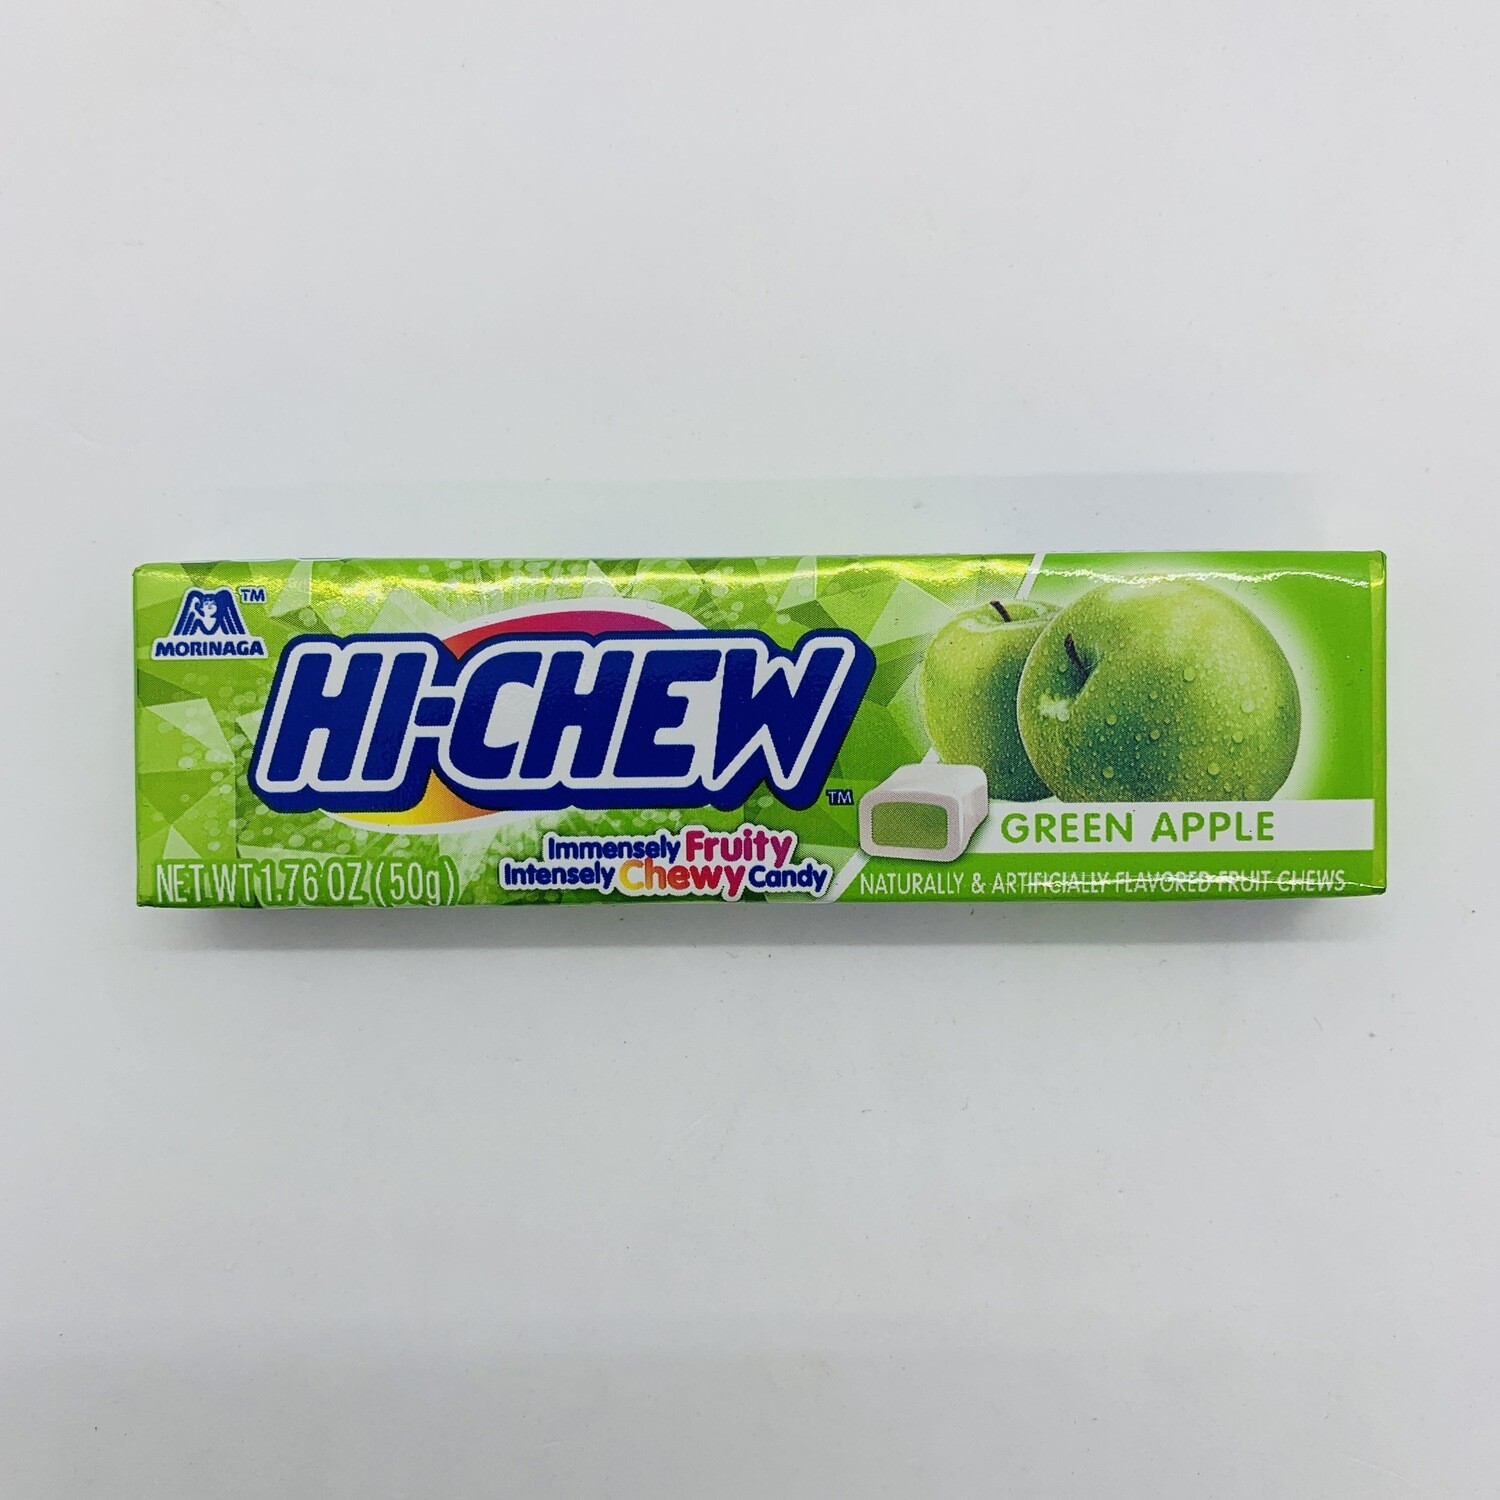 HICHEW Stick Green Apple